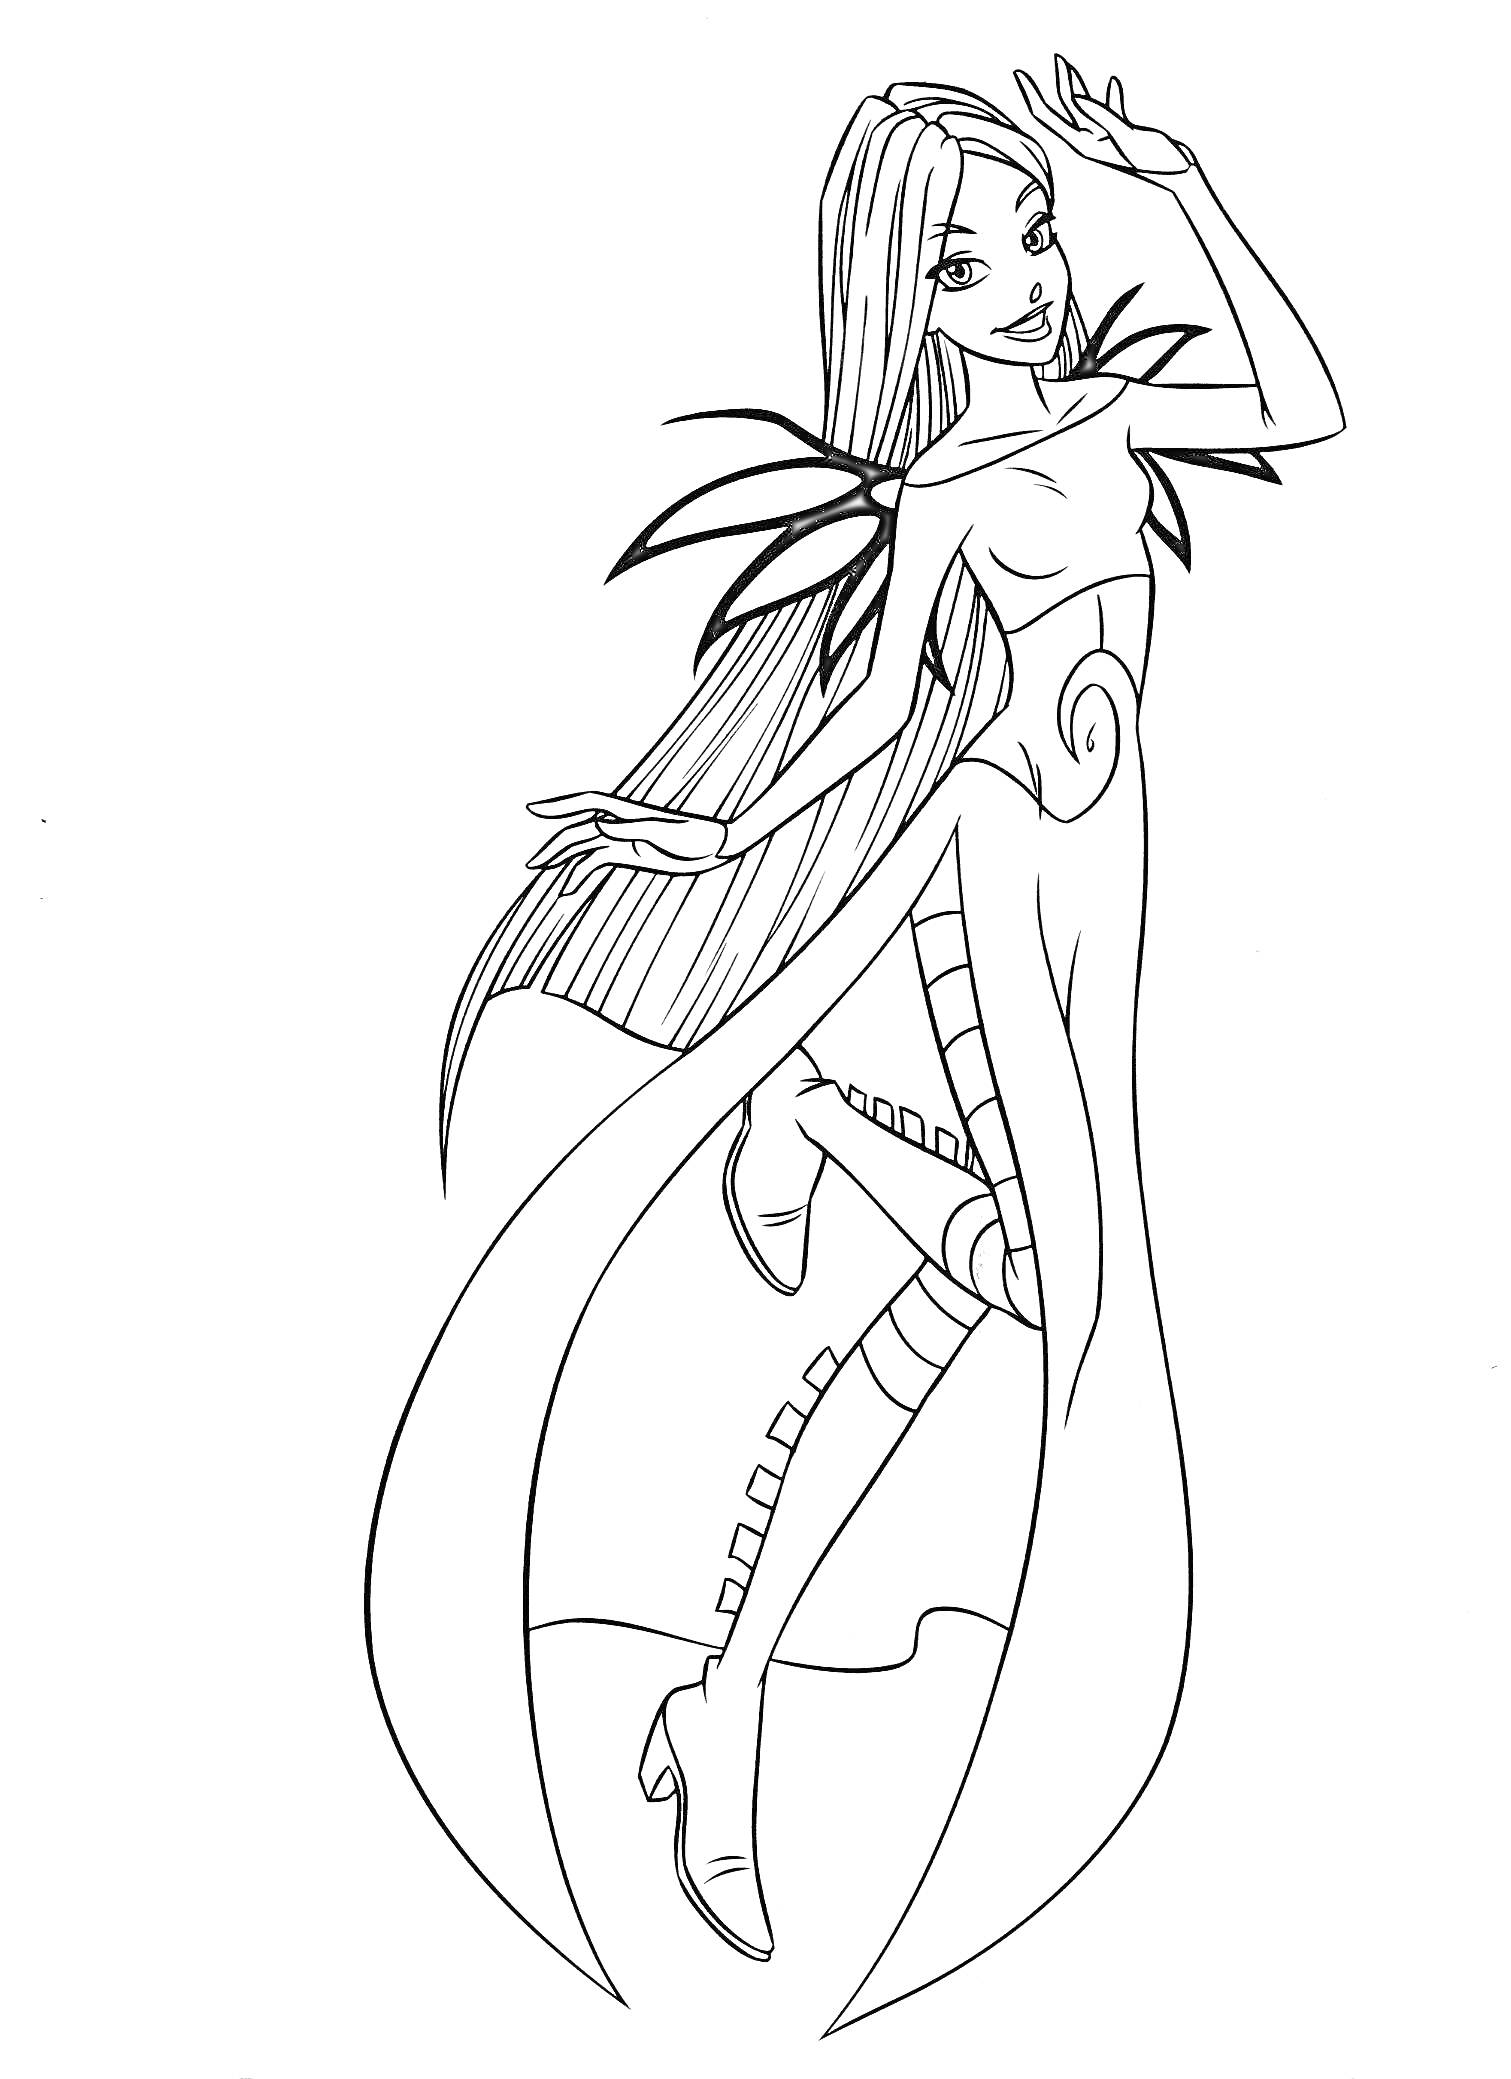 Раскраска Чародейка с длинными волосами и крыльями, одетая в длинное платье и сапоги